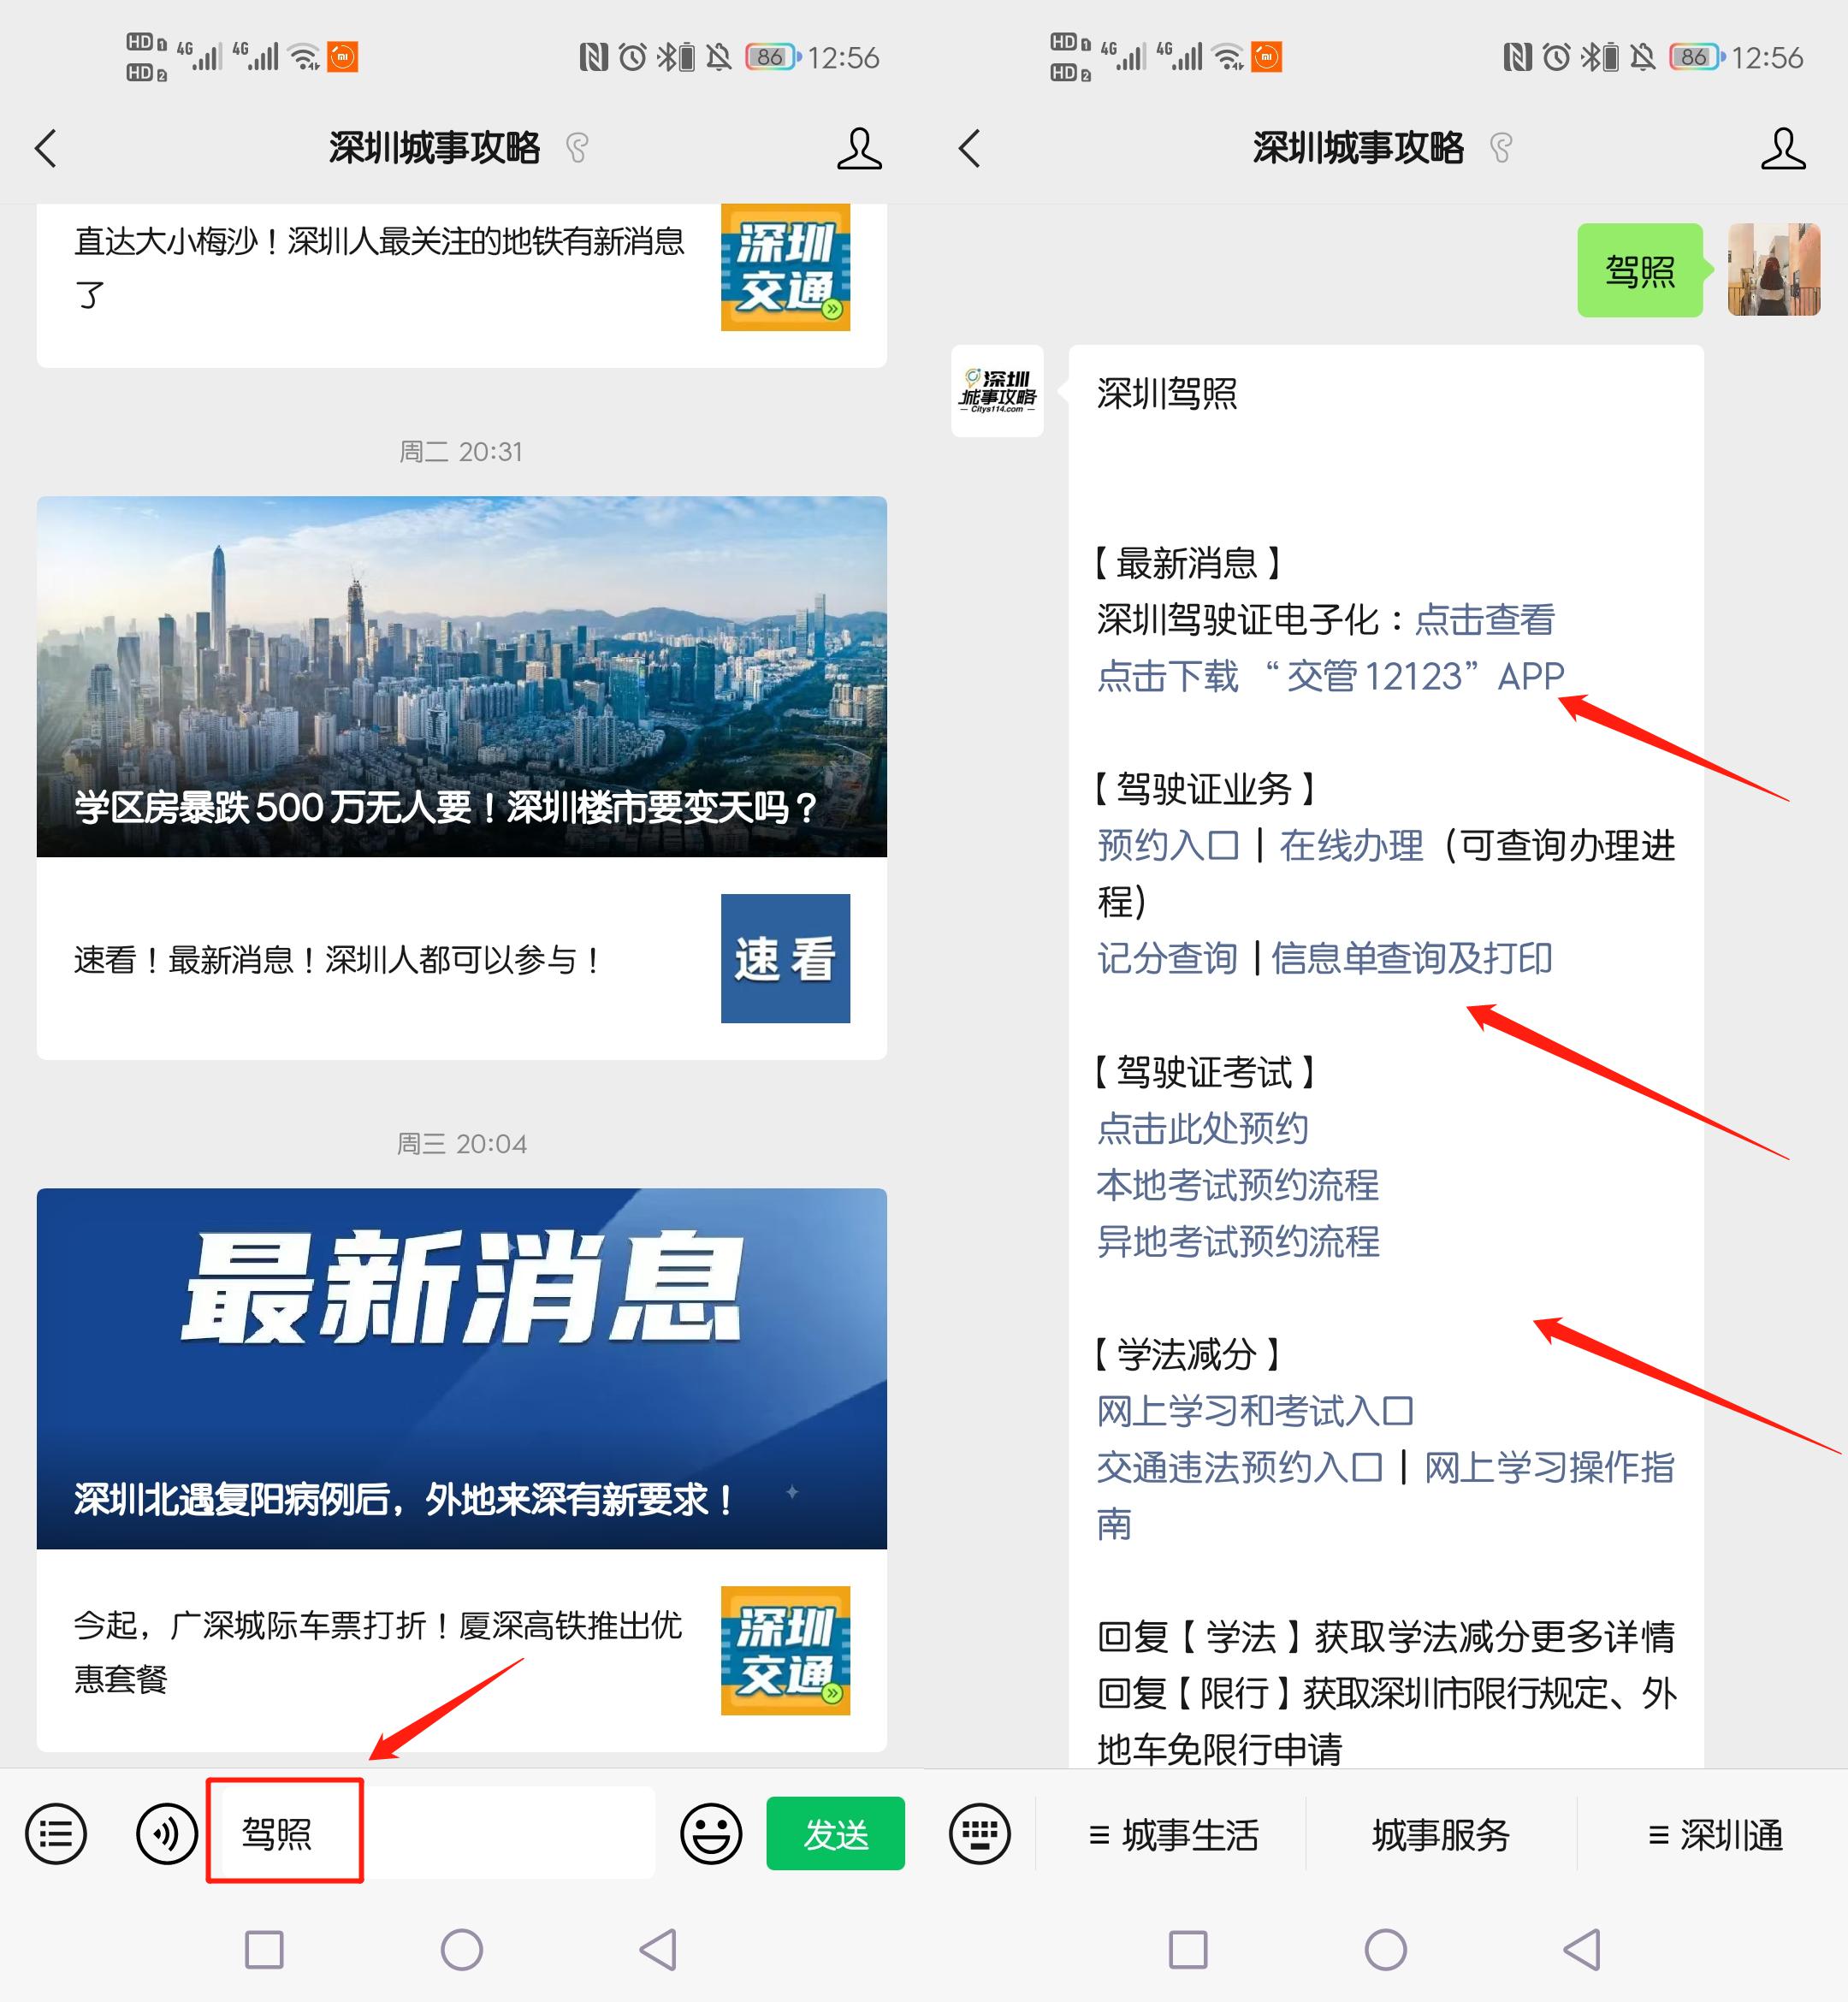 9月1日起 深圳推广应用全国统一电子驾驶证